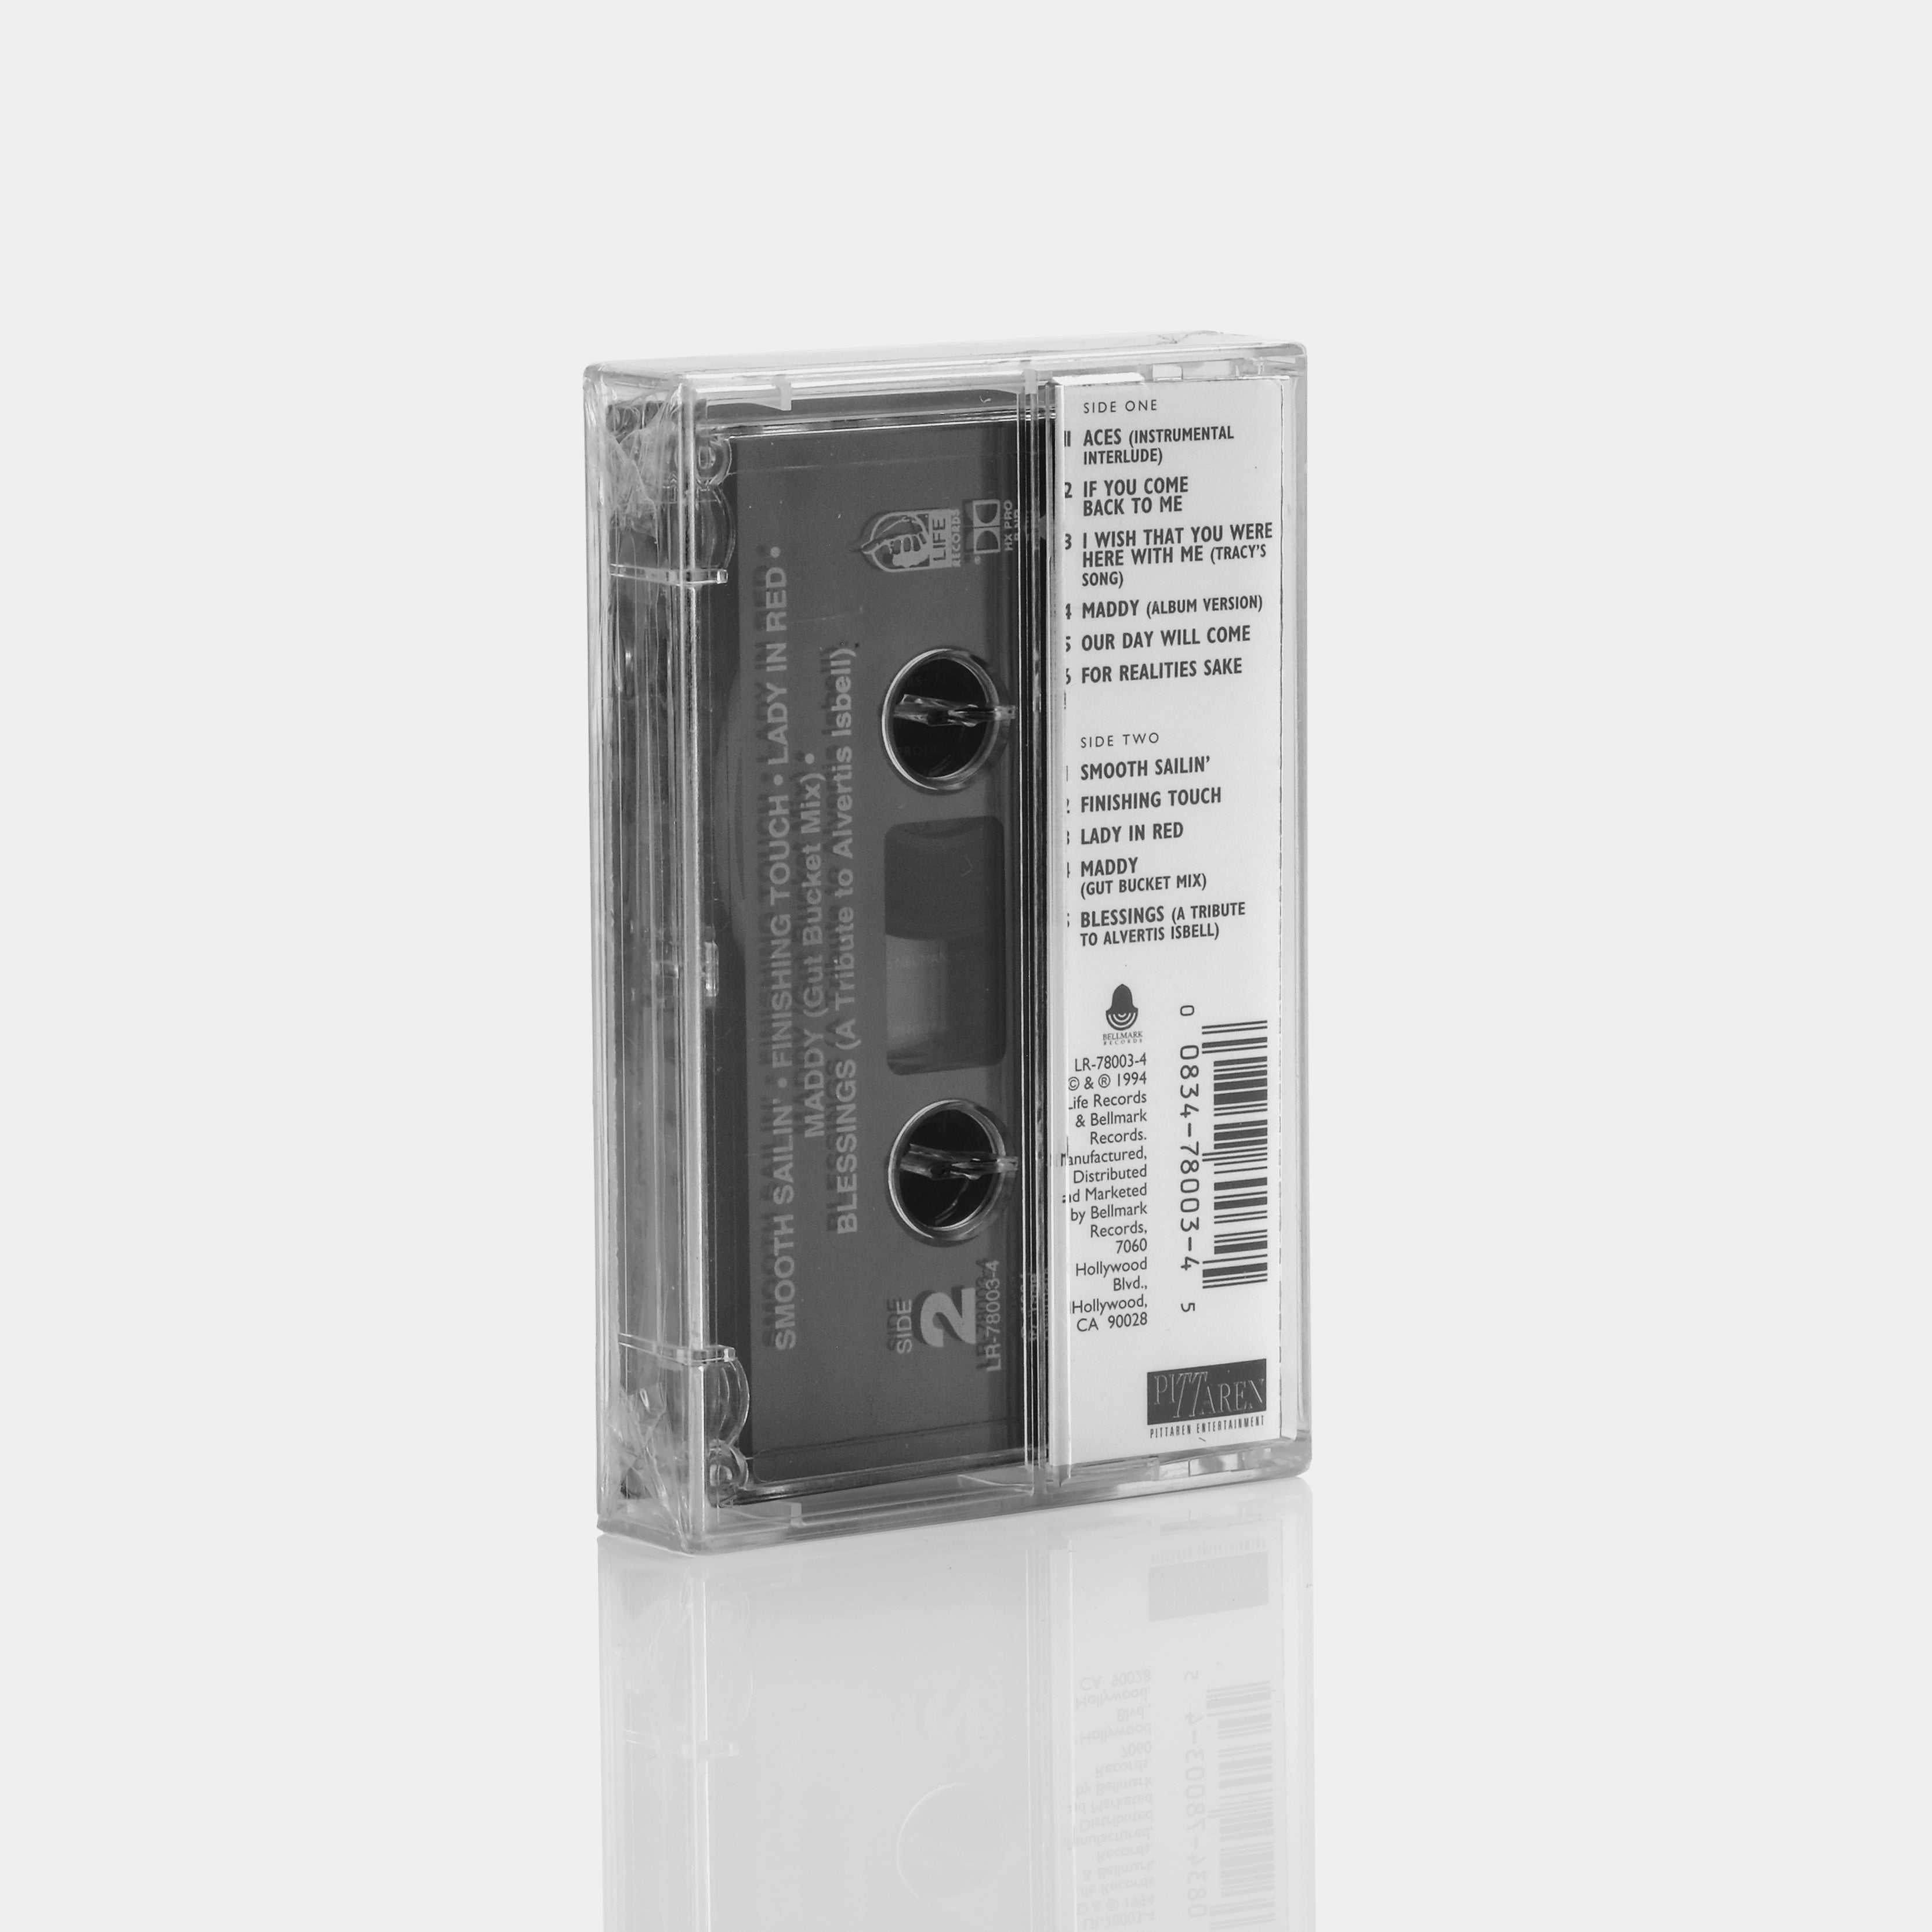 Ron Banks/L.J. Reynolds - 2 Of A Kind Cassette Tape